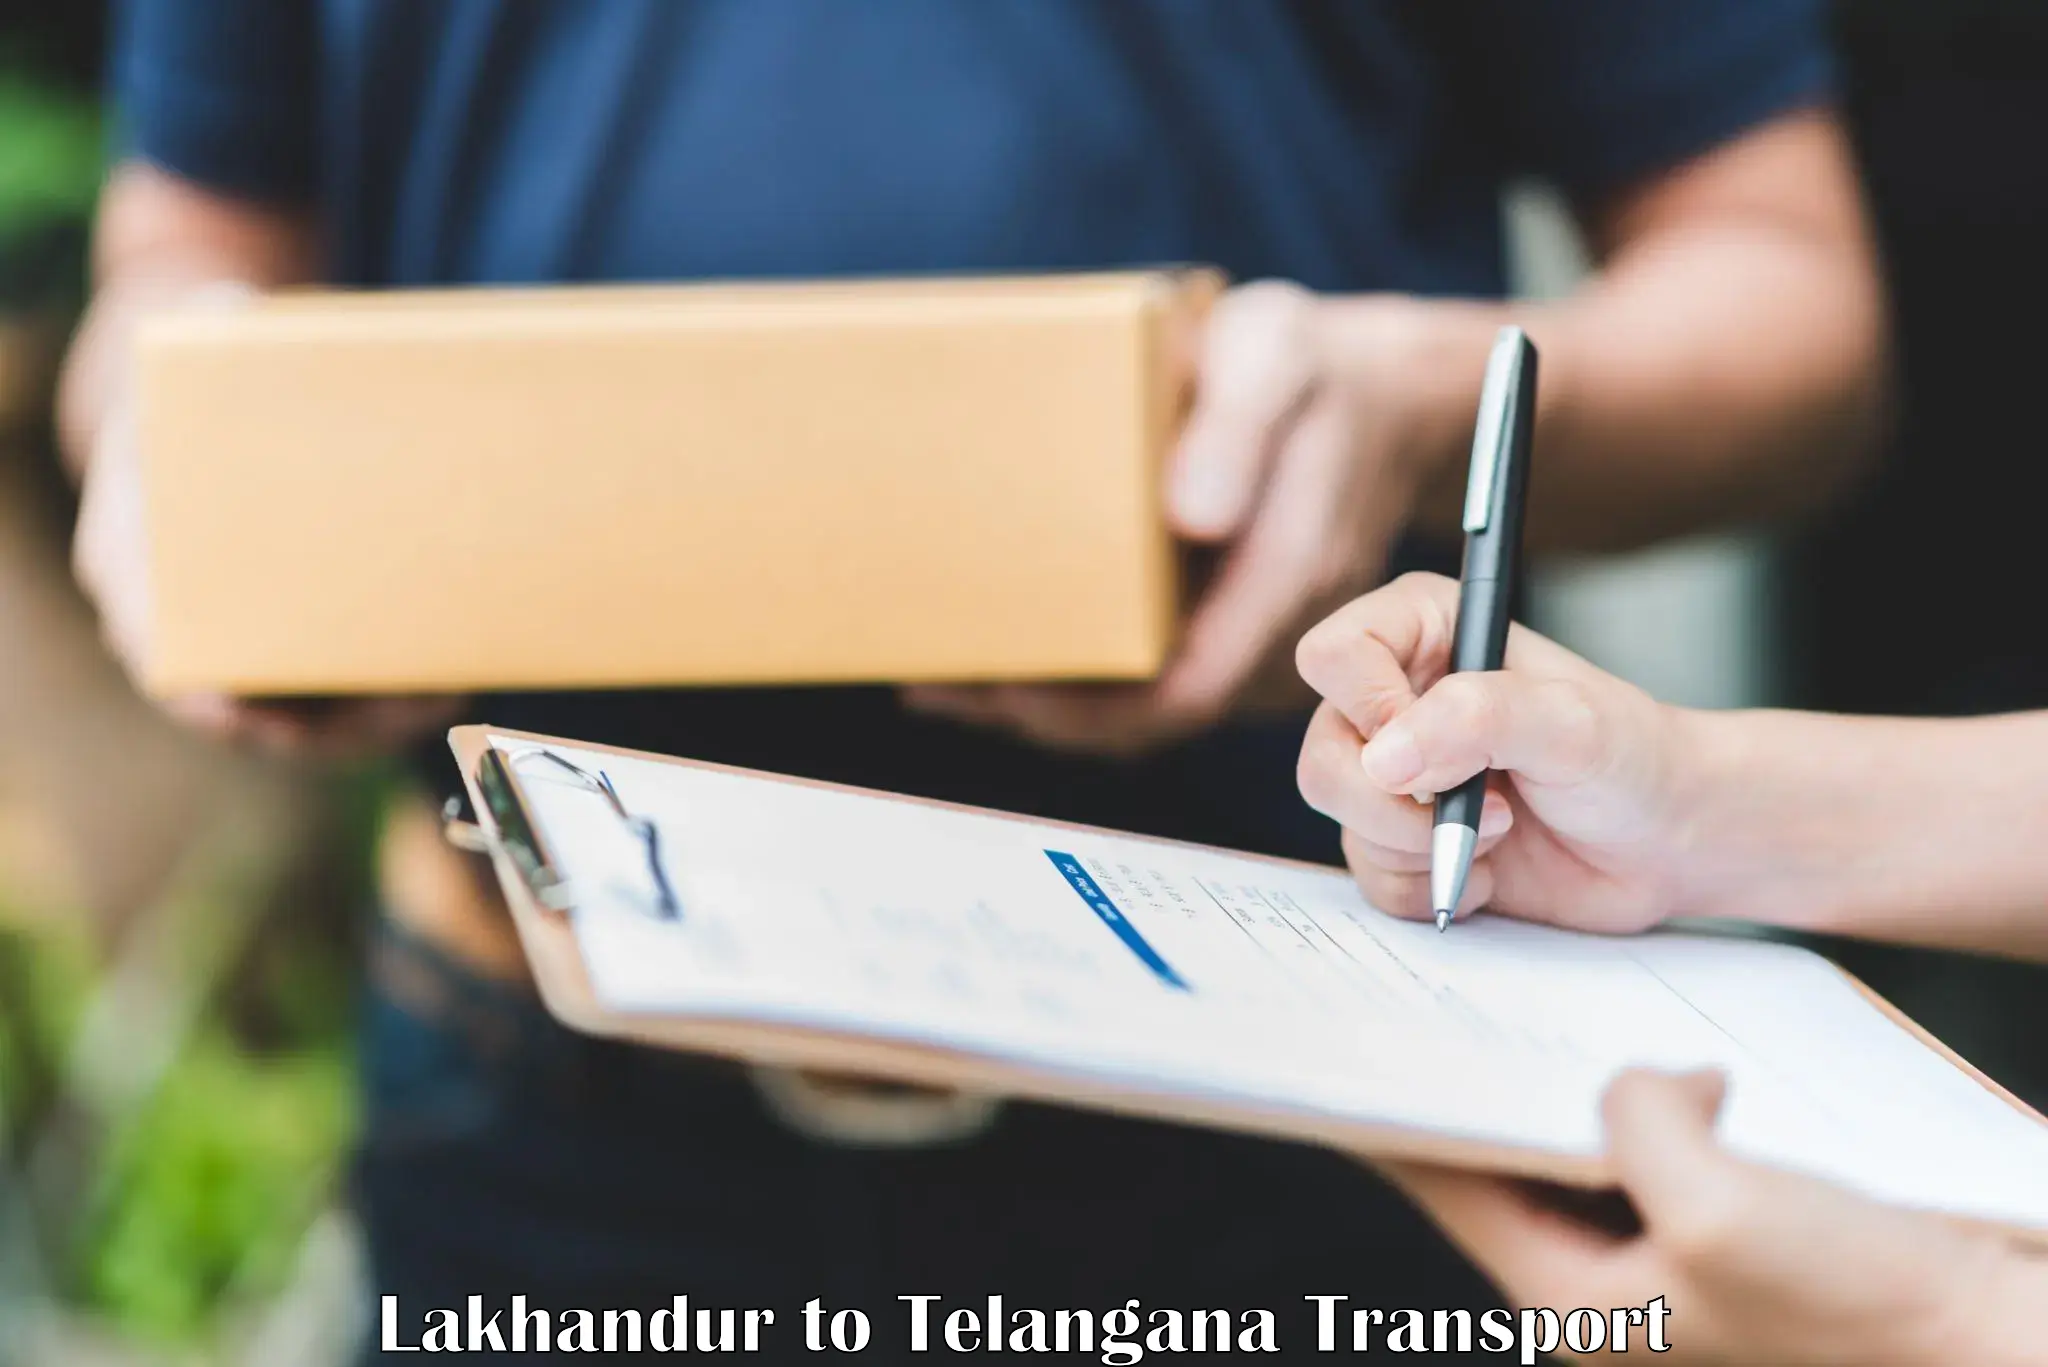 Daily transport service Lakhandur to Manthani